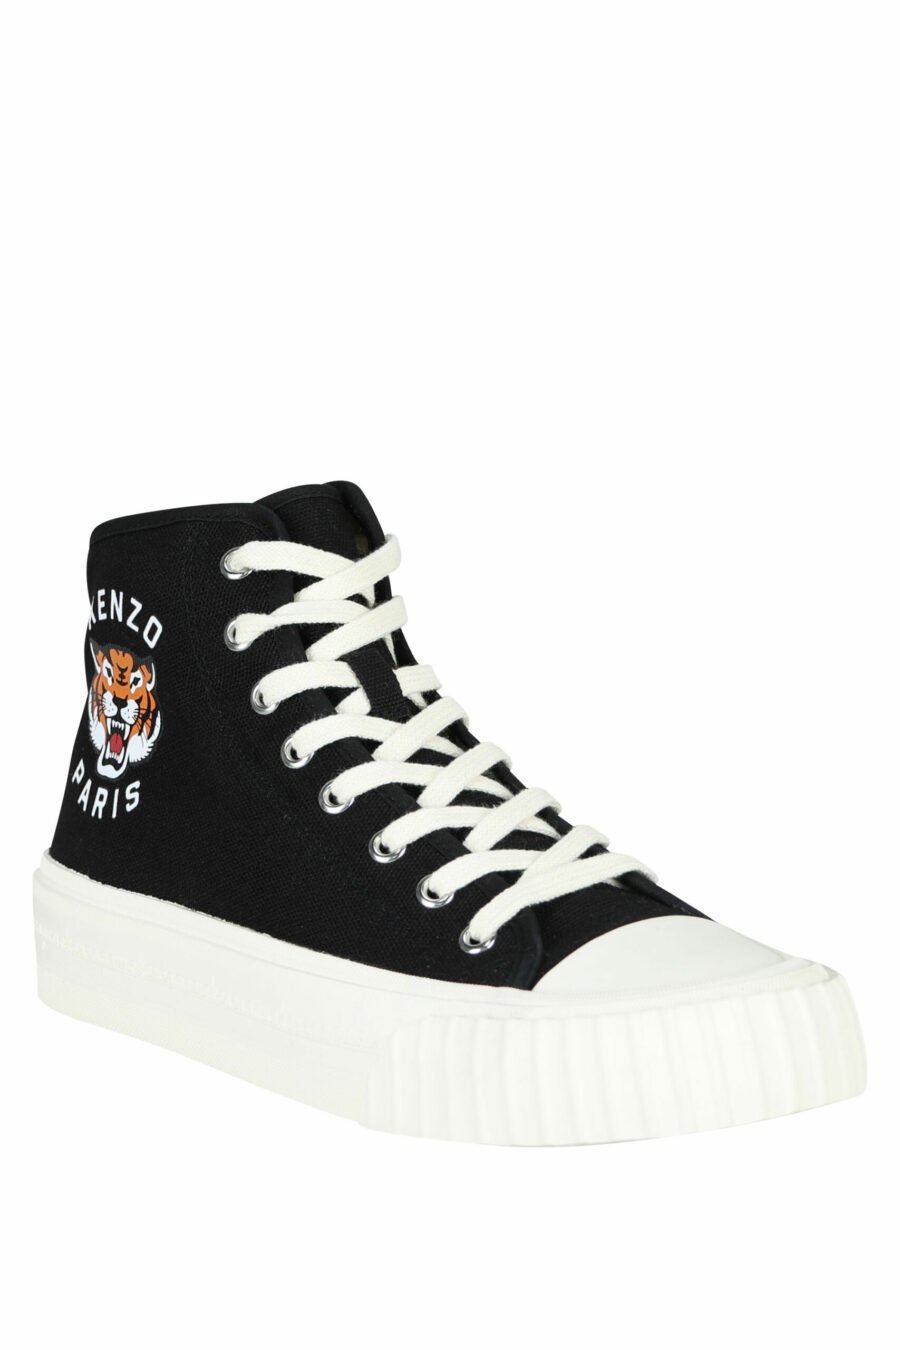 Zapatillas negras altas con logo "kenzo foxy" con logo tigre - 3612230649712 3 scaled